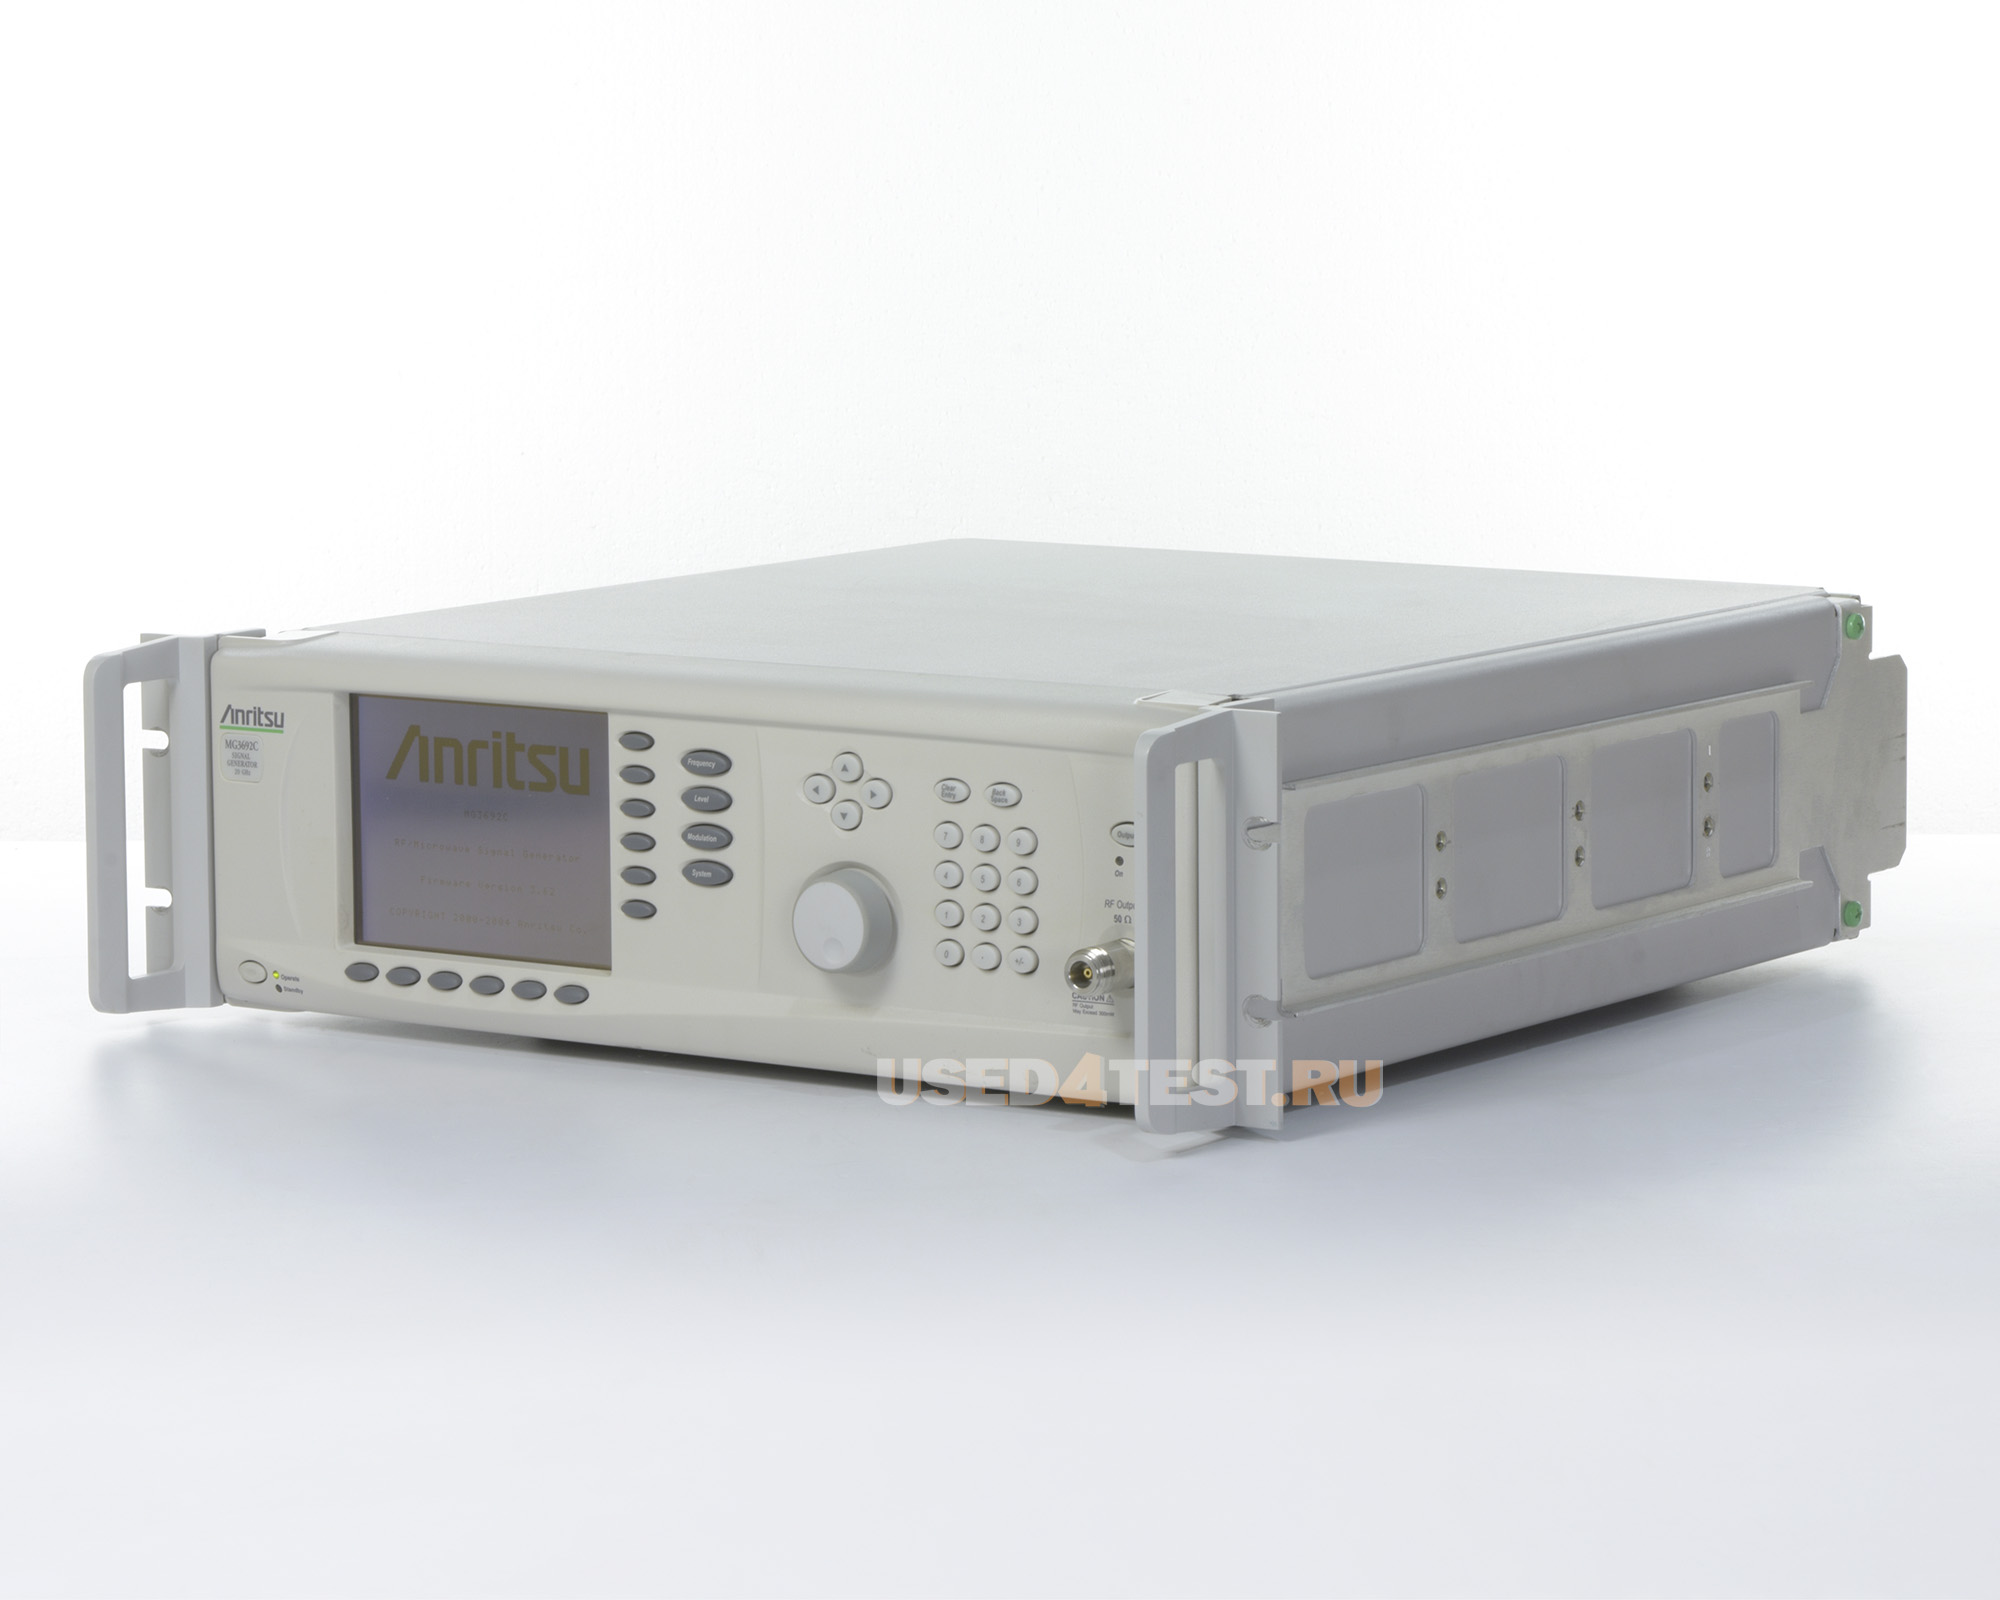 Генератор сигналов Anritsu MG3692C
 с диапазоном от 0,1 Гц до 20 ГГц
 
 В комплекте с опциями:

	
	MG3690C/1A — Rack Mount with slides
	
	MG3690C/4 — 8 MHz to 2.2 GHz RF coverage, Ultra-Low Phase Noise version
	
	SM4743 — N (f) output connector 


 Стоимость указана в Рублях DDP Москва по безналичному расчету включая НДС 20%
